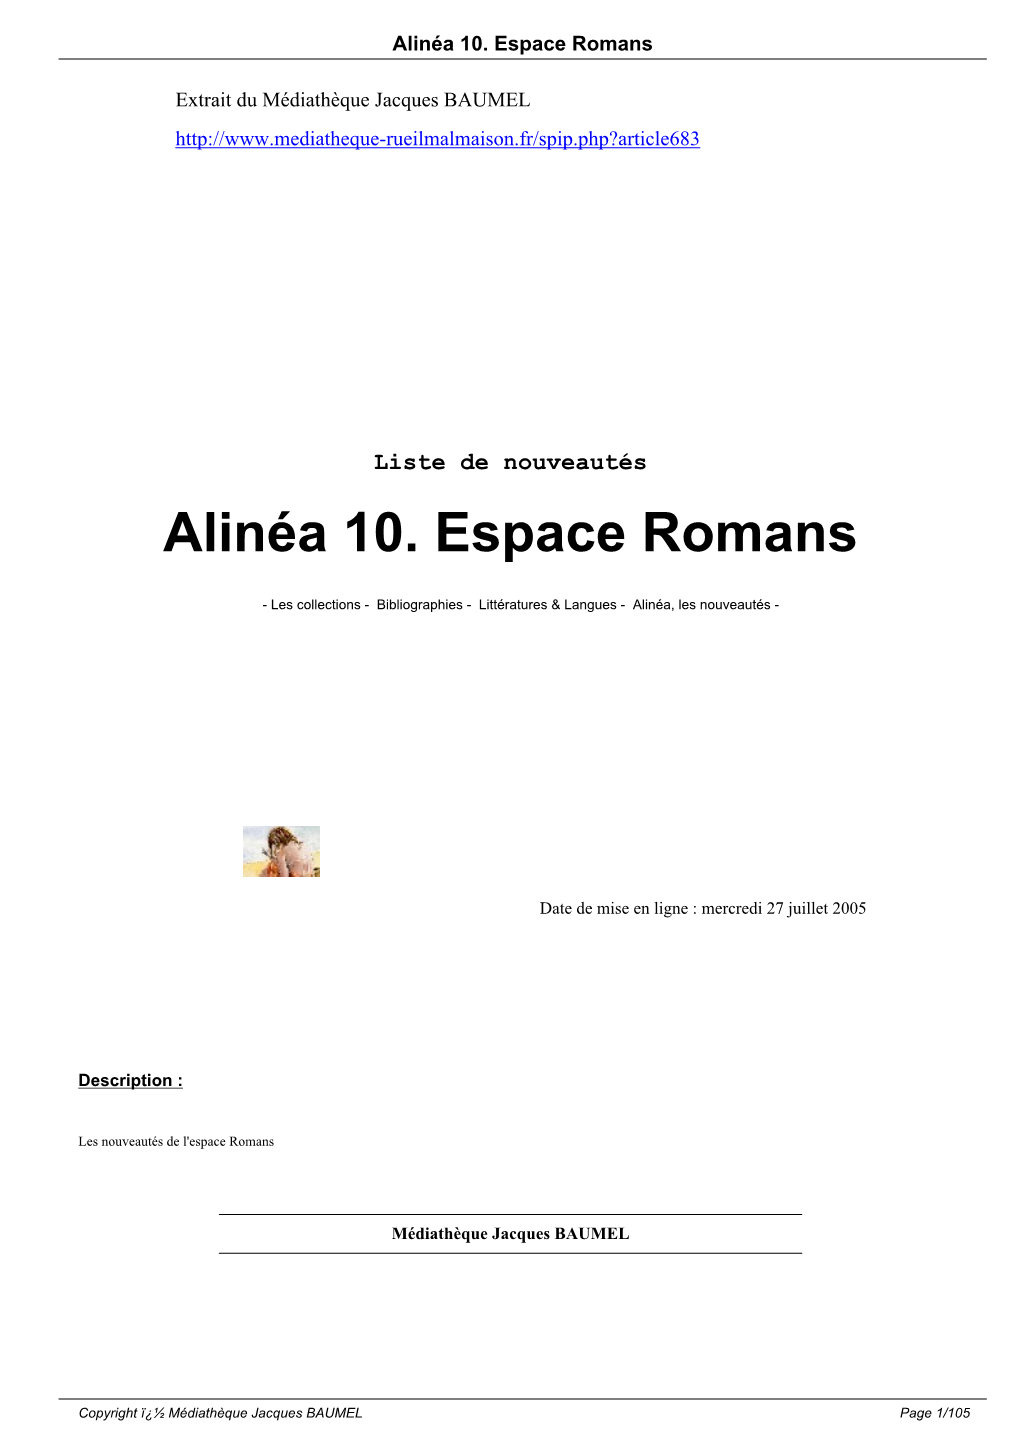 Alinéa 10. Espace Romans